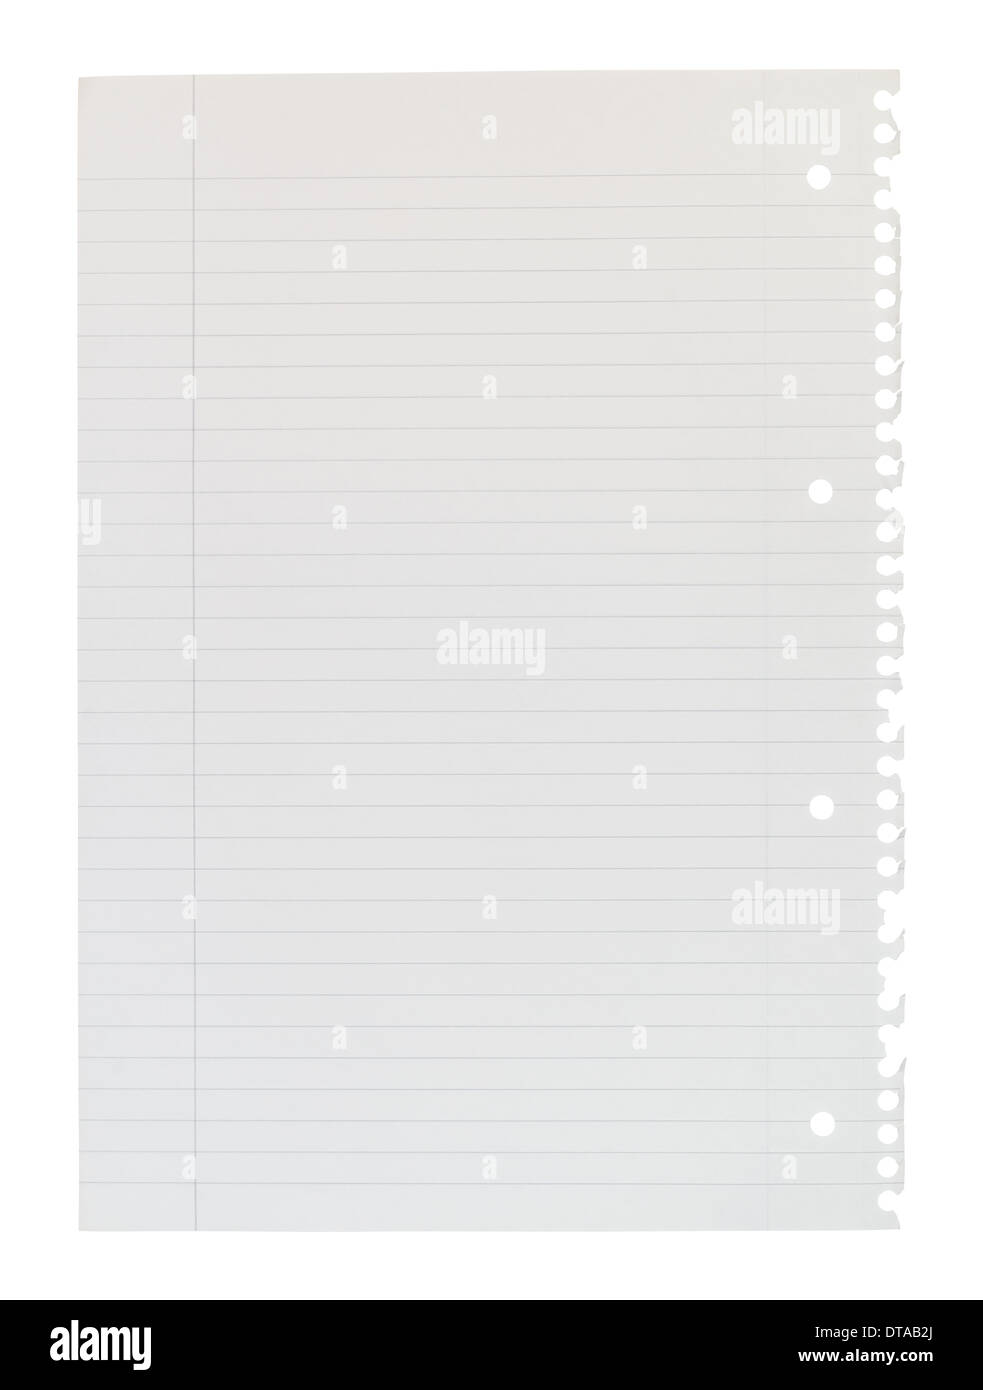 Página A4 de cuaderno rasgado de encuadernación espiral forrado bloc de notas aisladas contra un fondo blanco. Foto de stock